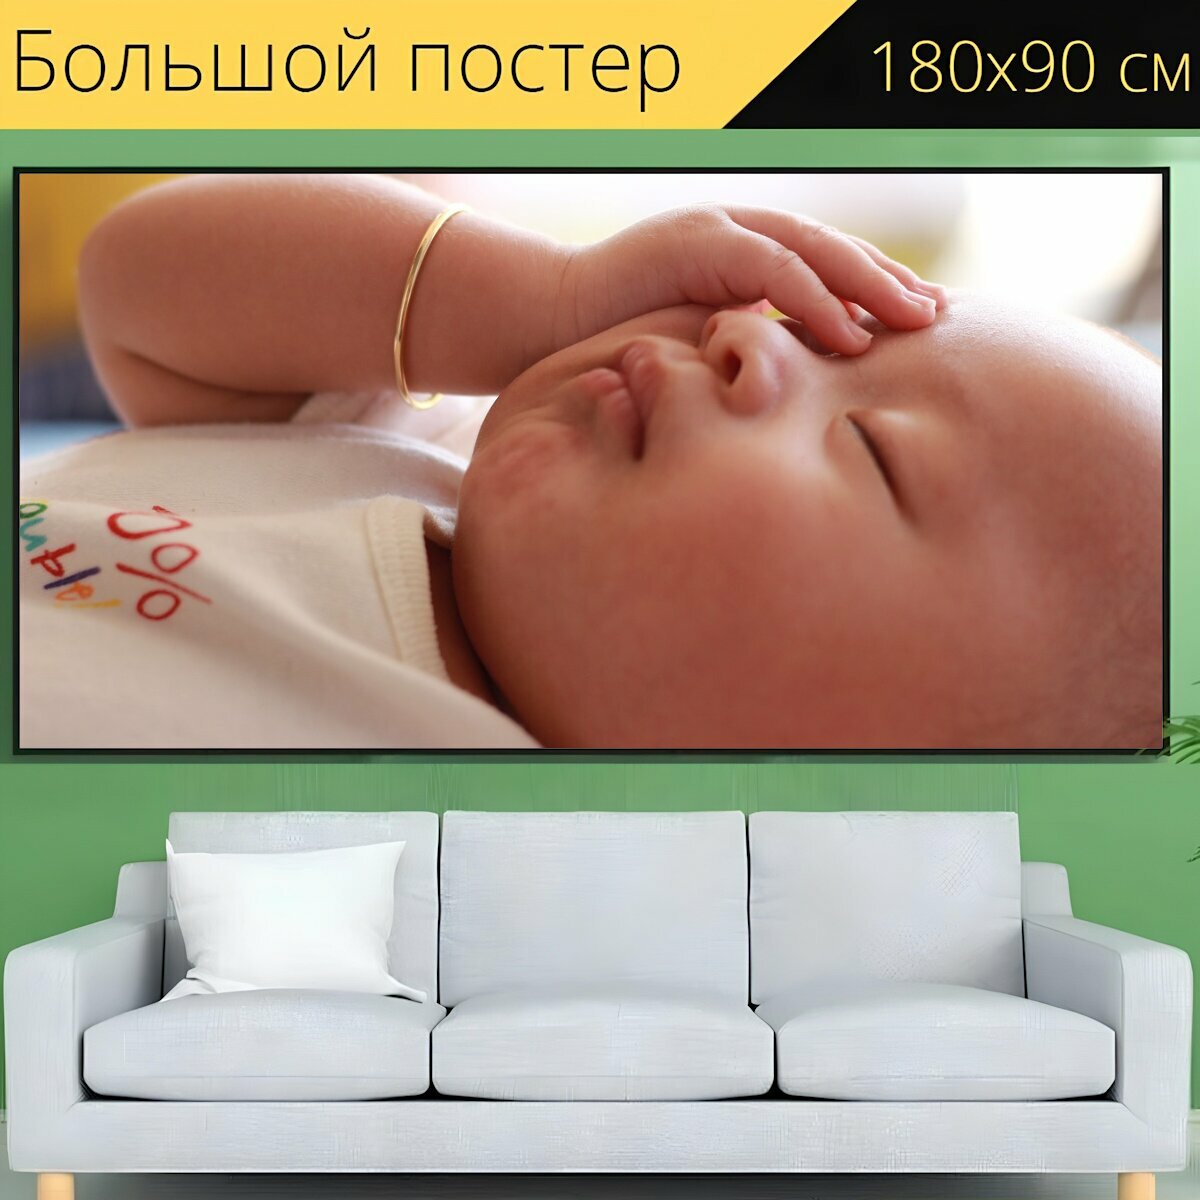 Большой постер "Новорожденный, спать, ребенок" 180 x 90 см. для интерьера